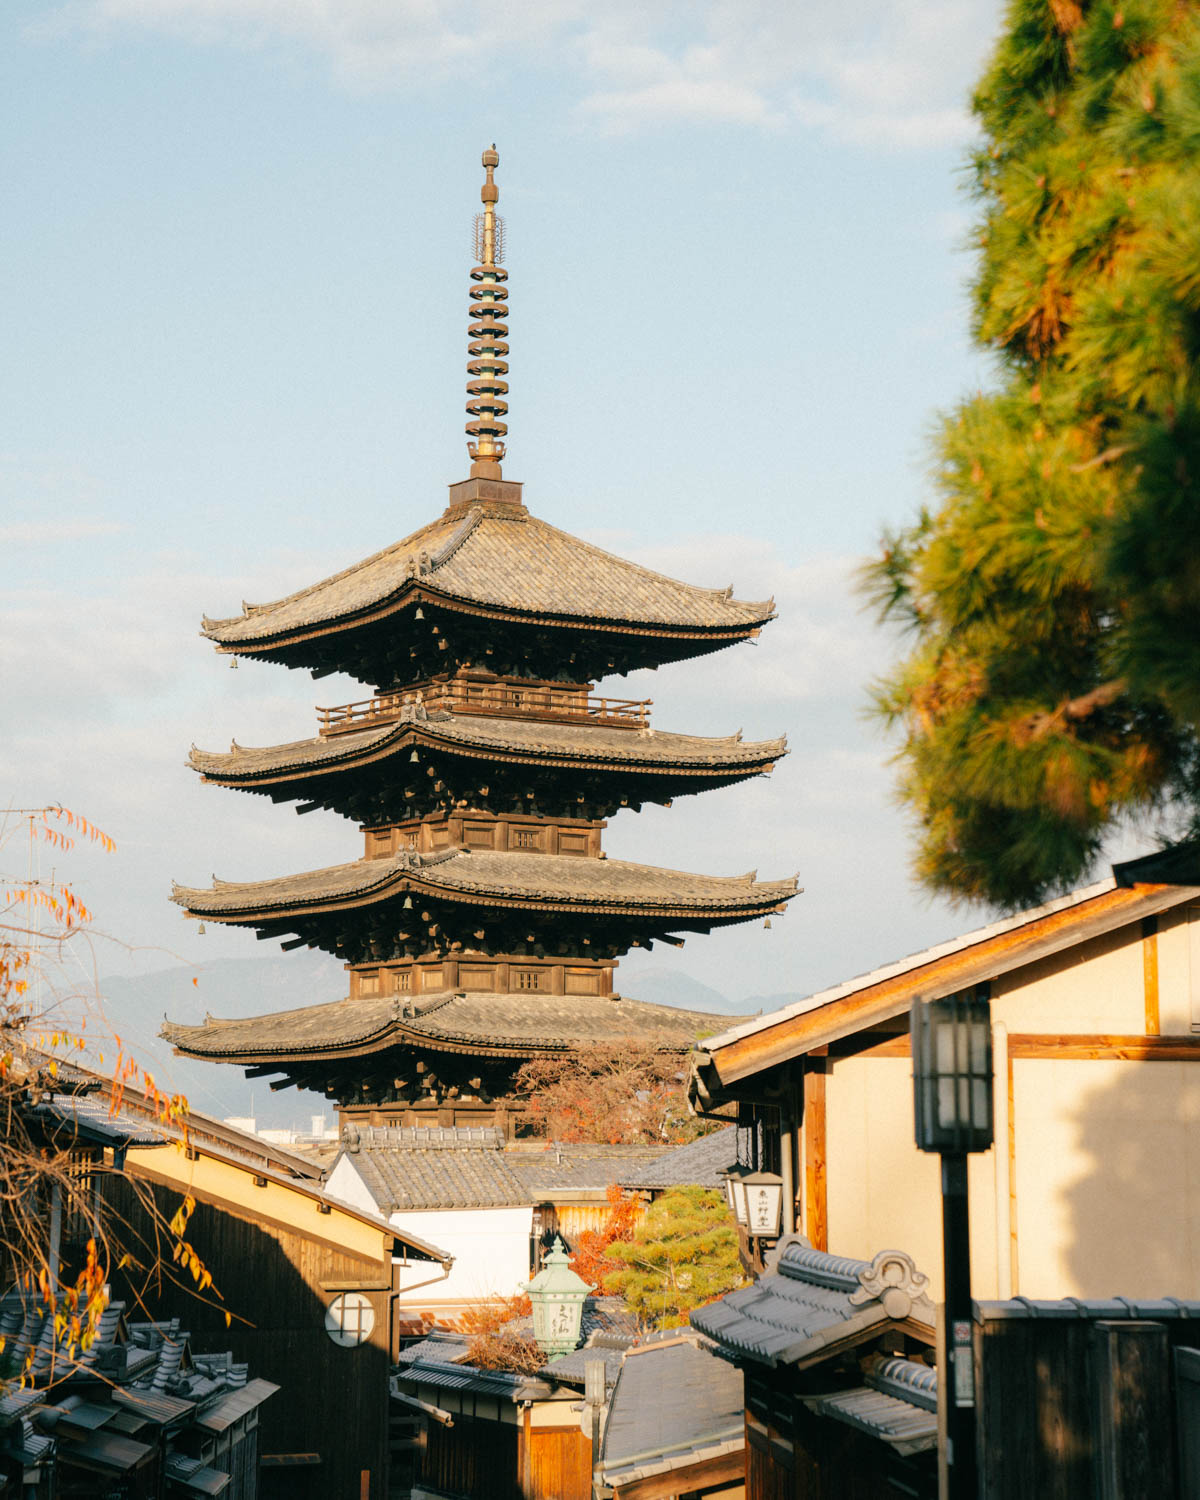 Yasaka Pagoda Higashiyama district kyoto japan